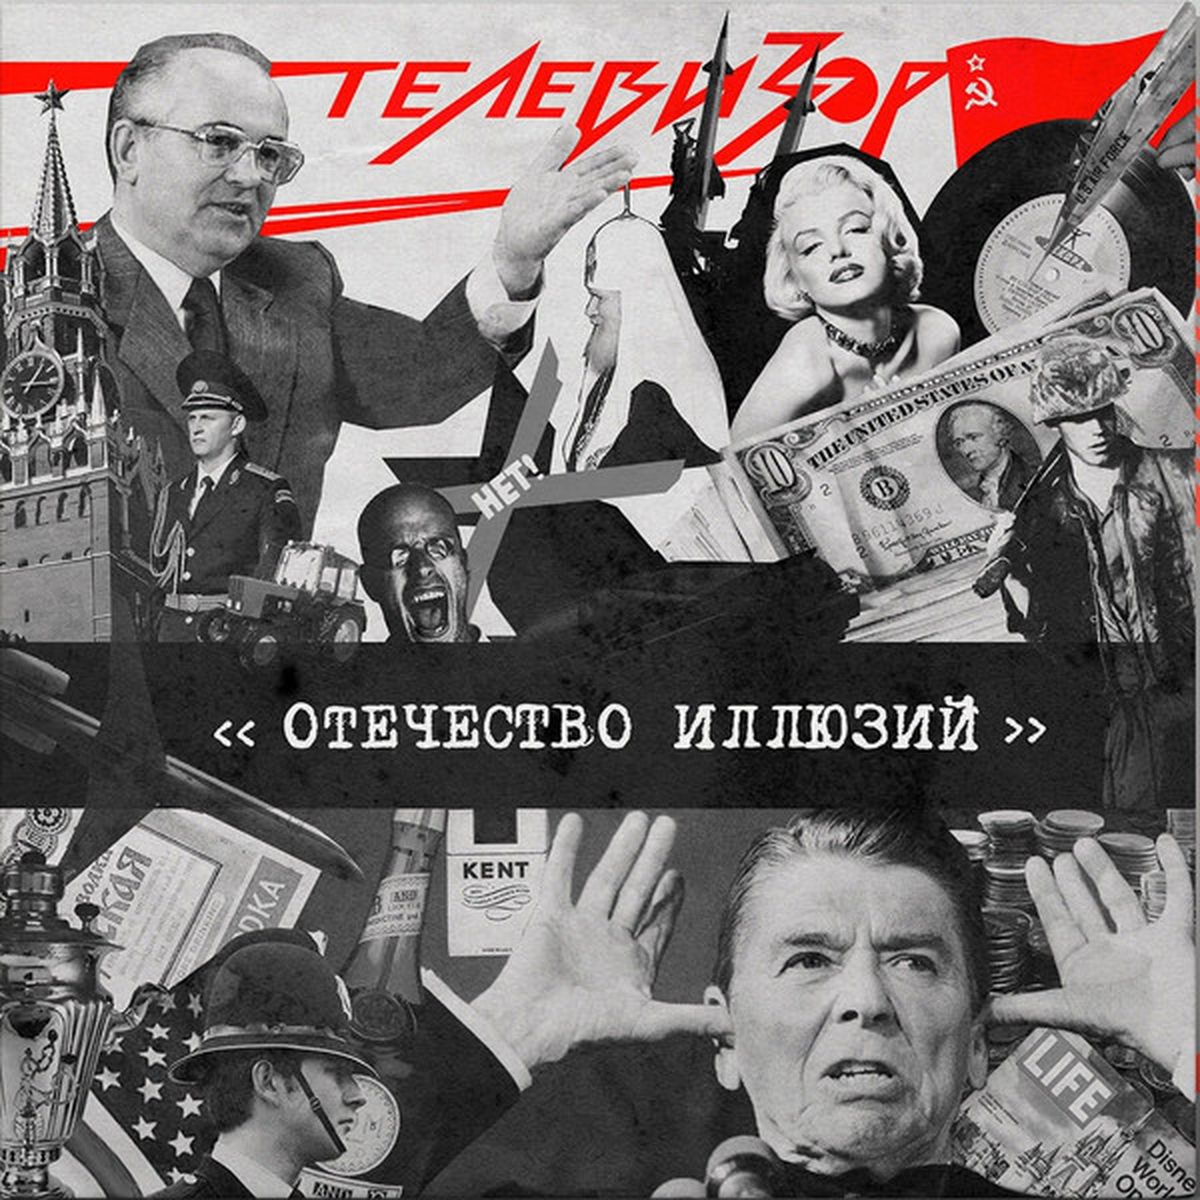 Обложка виниловой пластинки "Отечество иллюзий" группы "Телевизор", которая была издана в Украине в 2017 году. Первоначально альбом был издан в СССР в 1987 году.